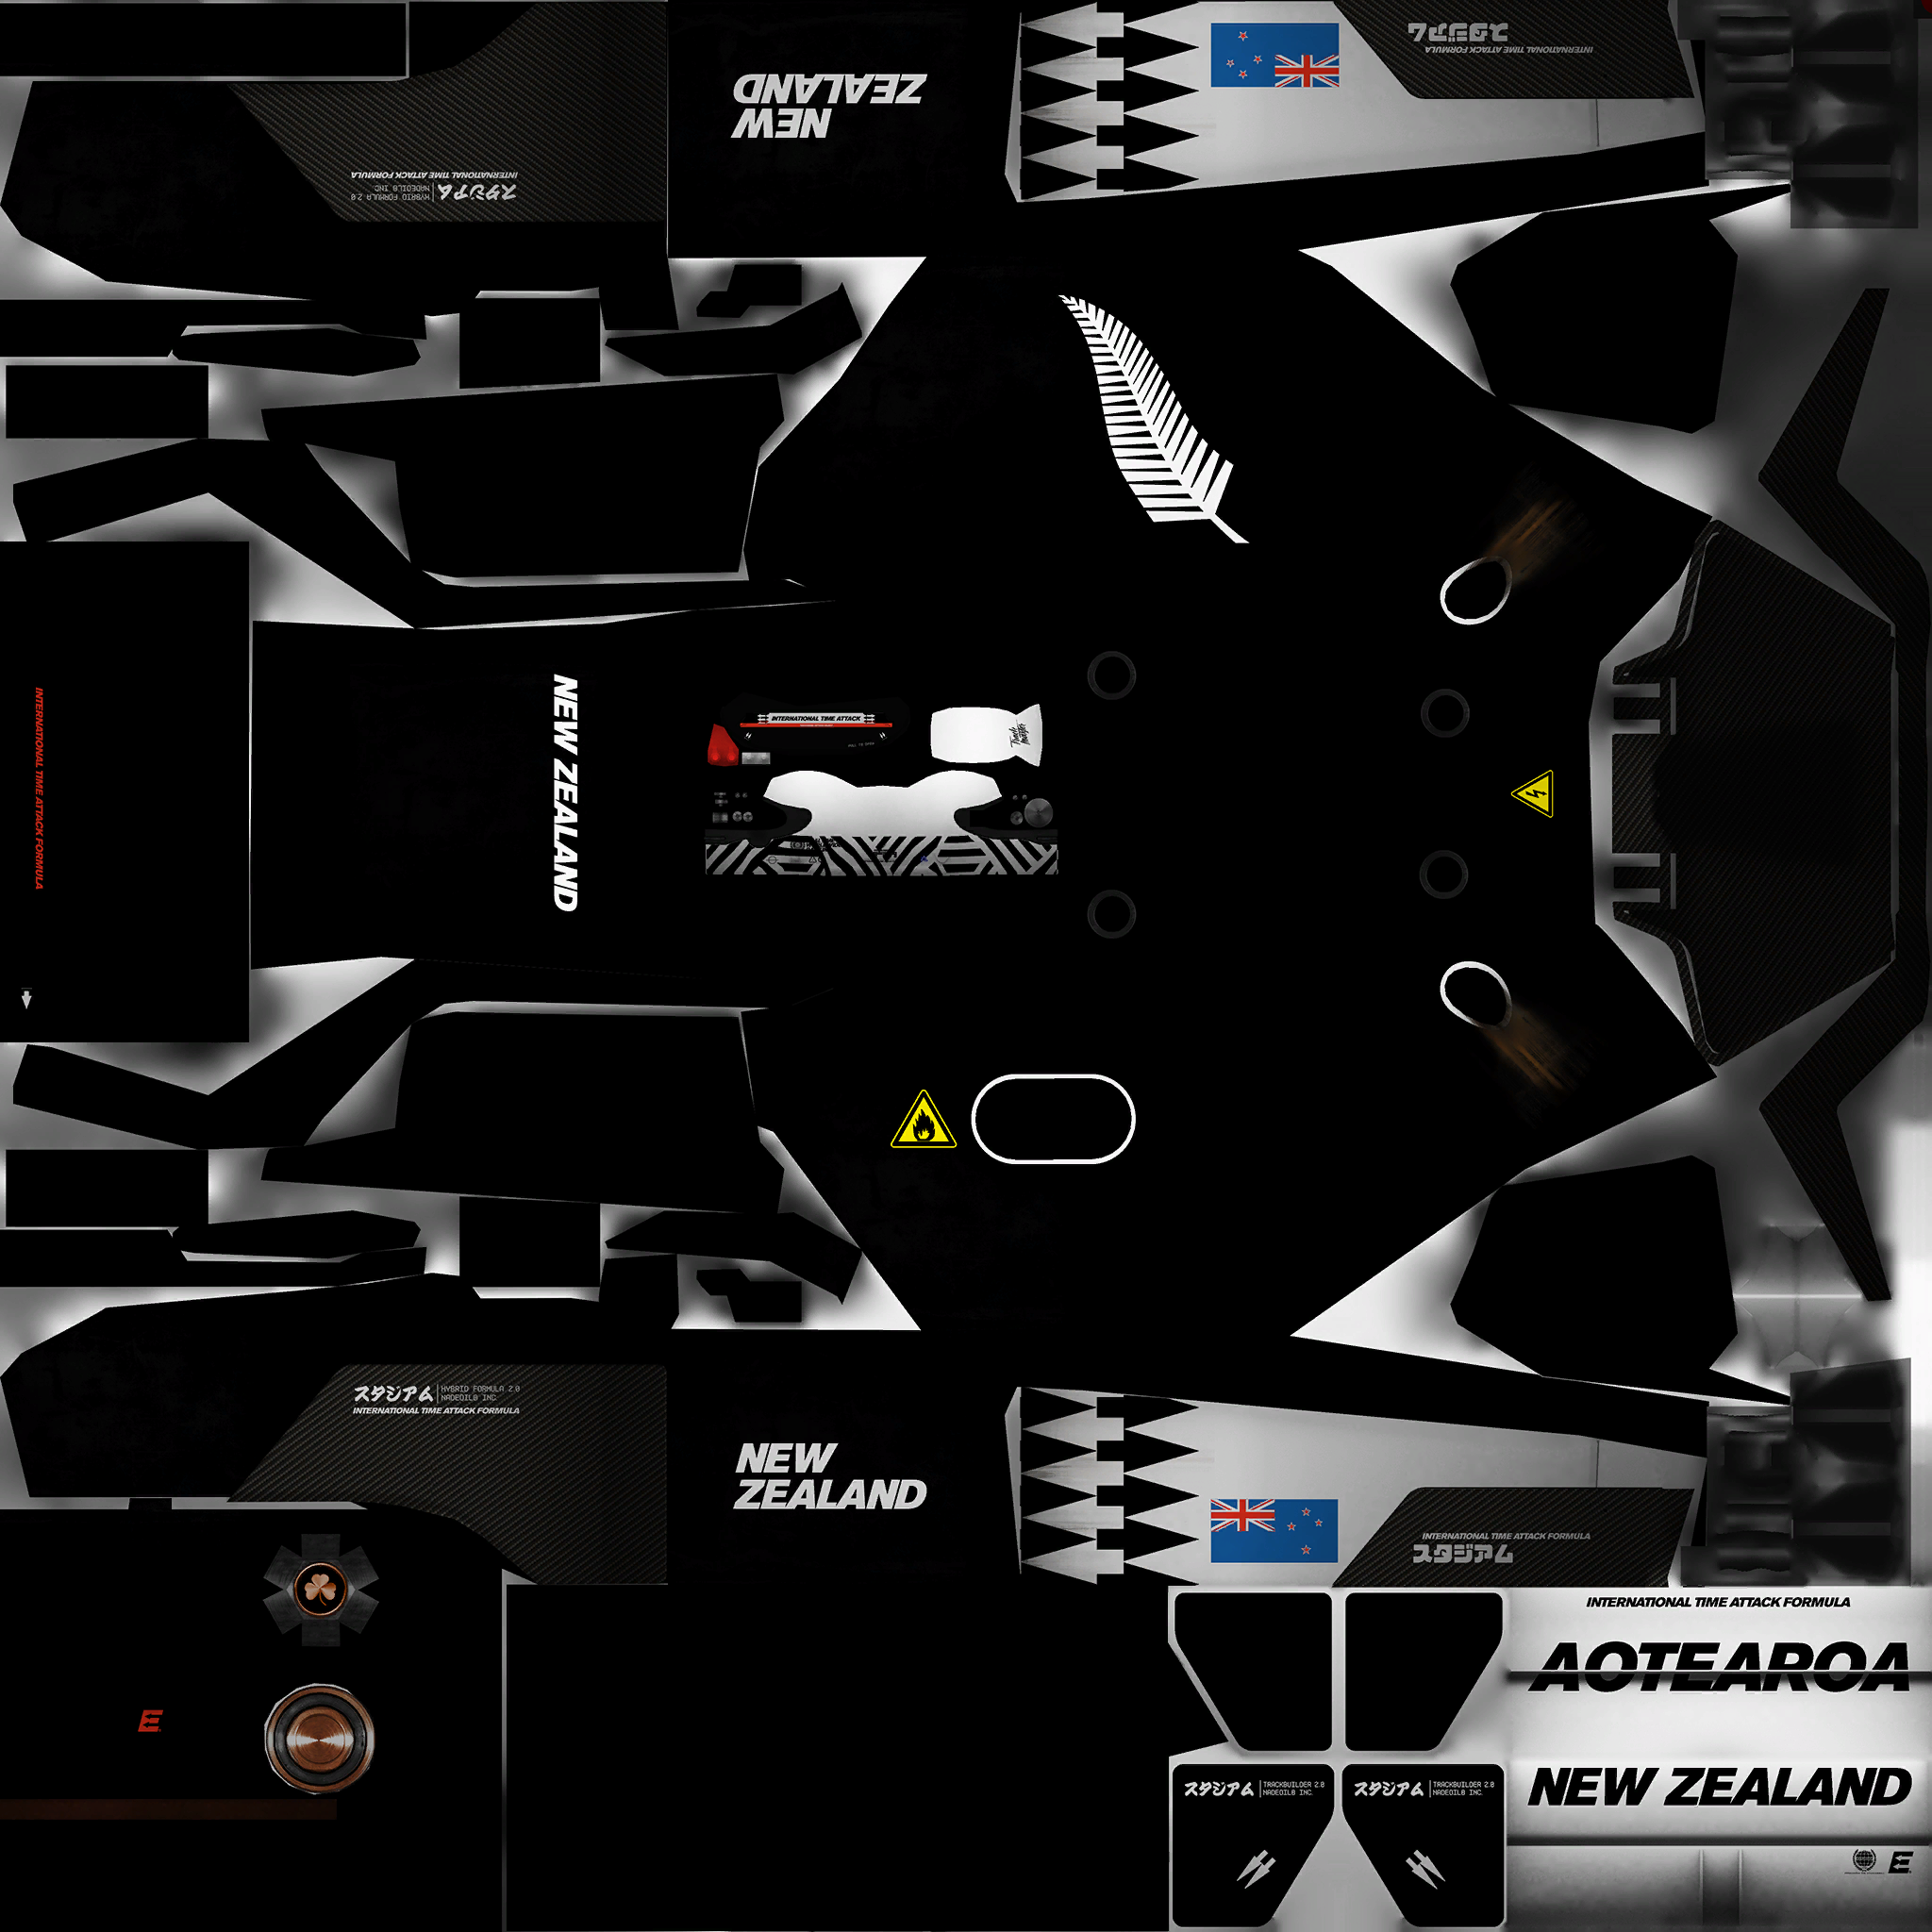 TrackMania Turbo - Arcade: New Zealand